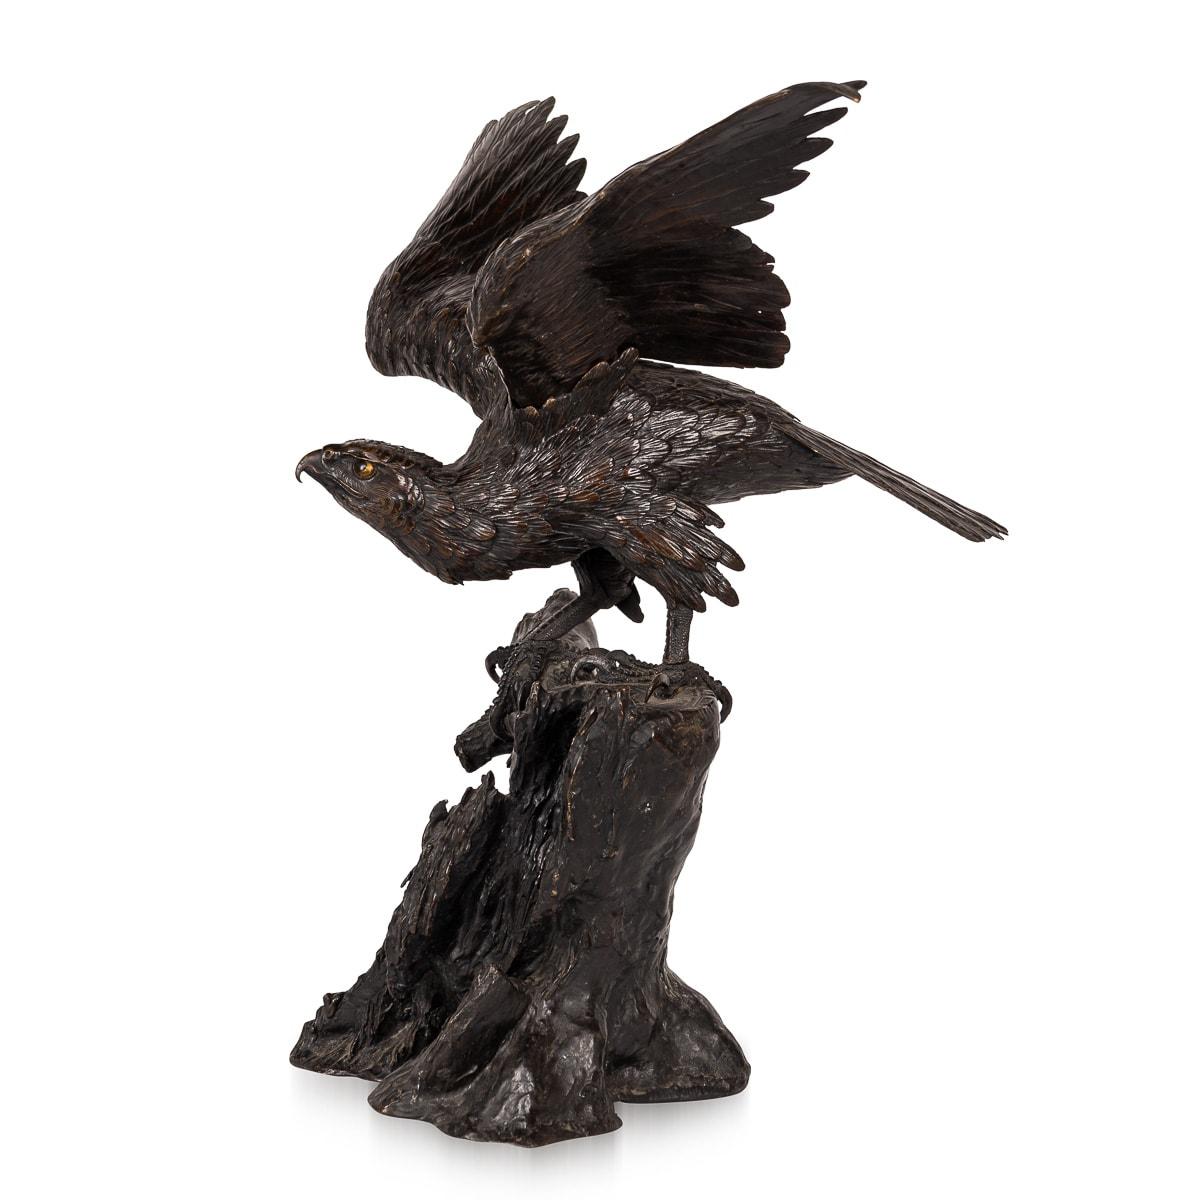 Ancienne sculpture japonaise en bronze de la fin du XIXe siècle représentant un aigle de la période Meiji, posé au sommet d'une formation rocheuse, les ailes gracieusement déployées. L'oiseau majestueux semble vigilant, prêt à fondre sur sa proie.